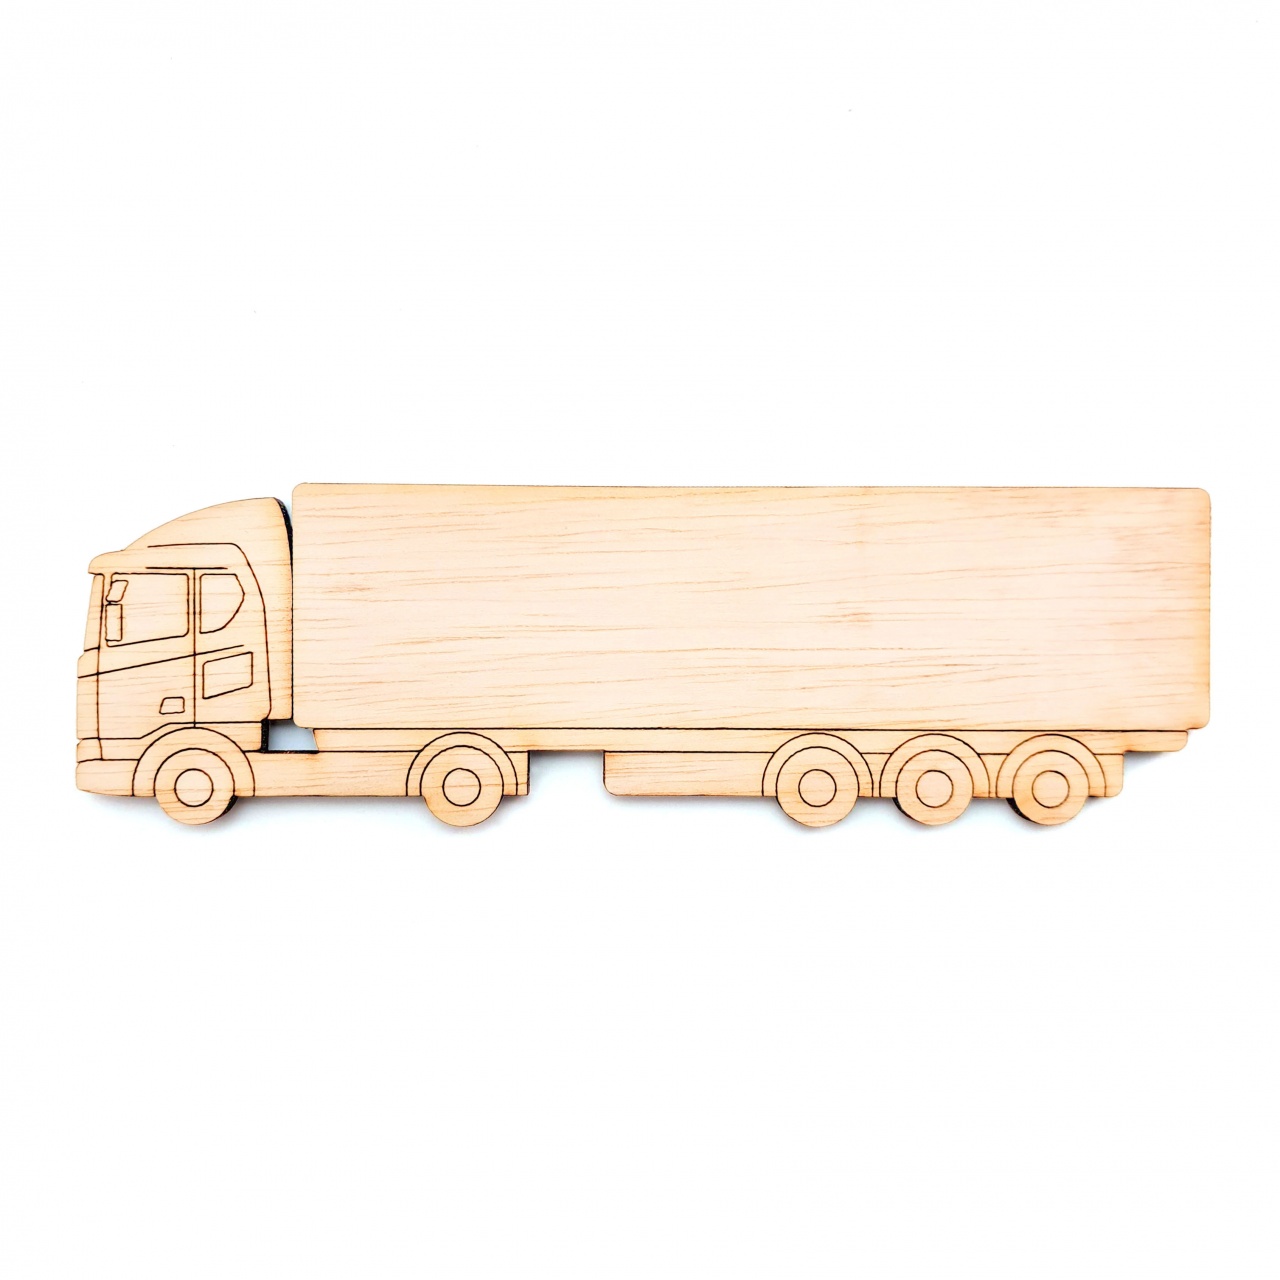 Camion TIR, 35×10,7 cm, placaj lemn :: 35 cm